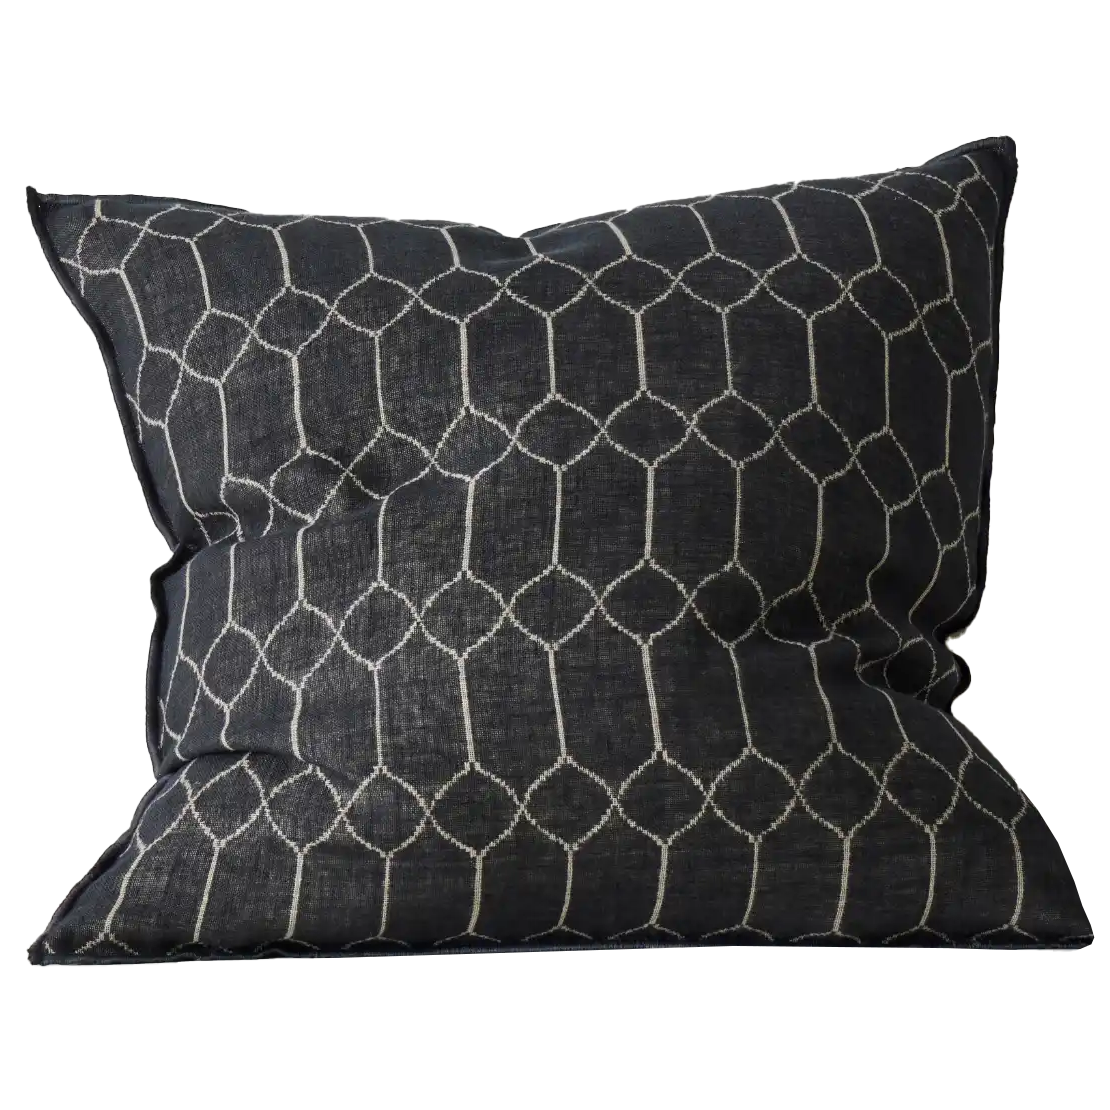 Vaucluse linen cushion cover 50cm